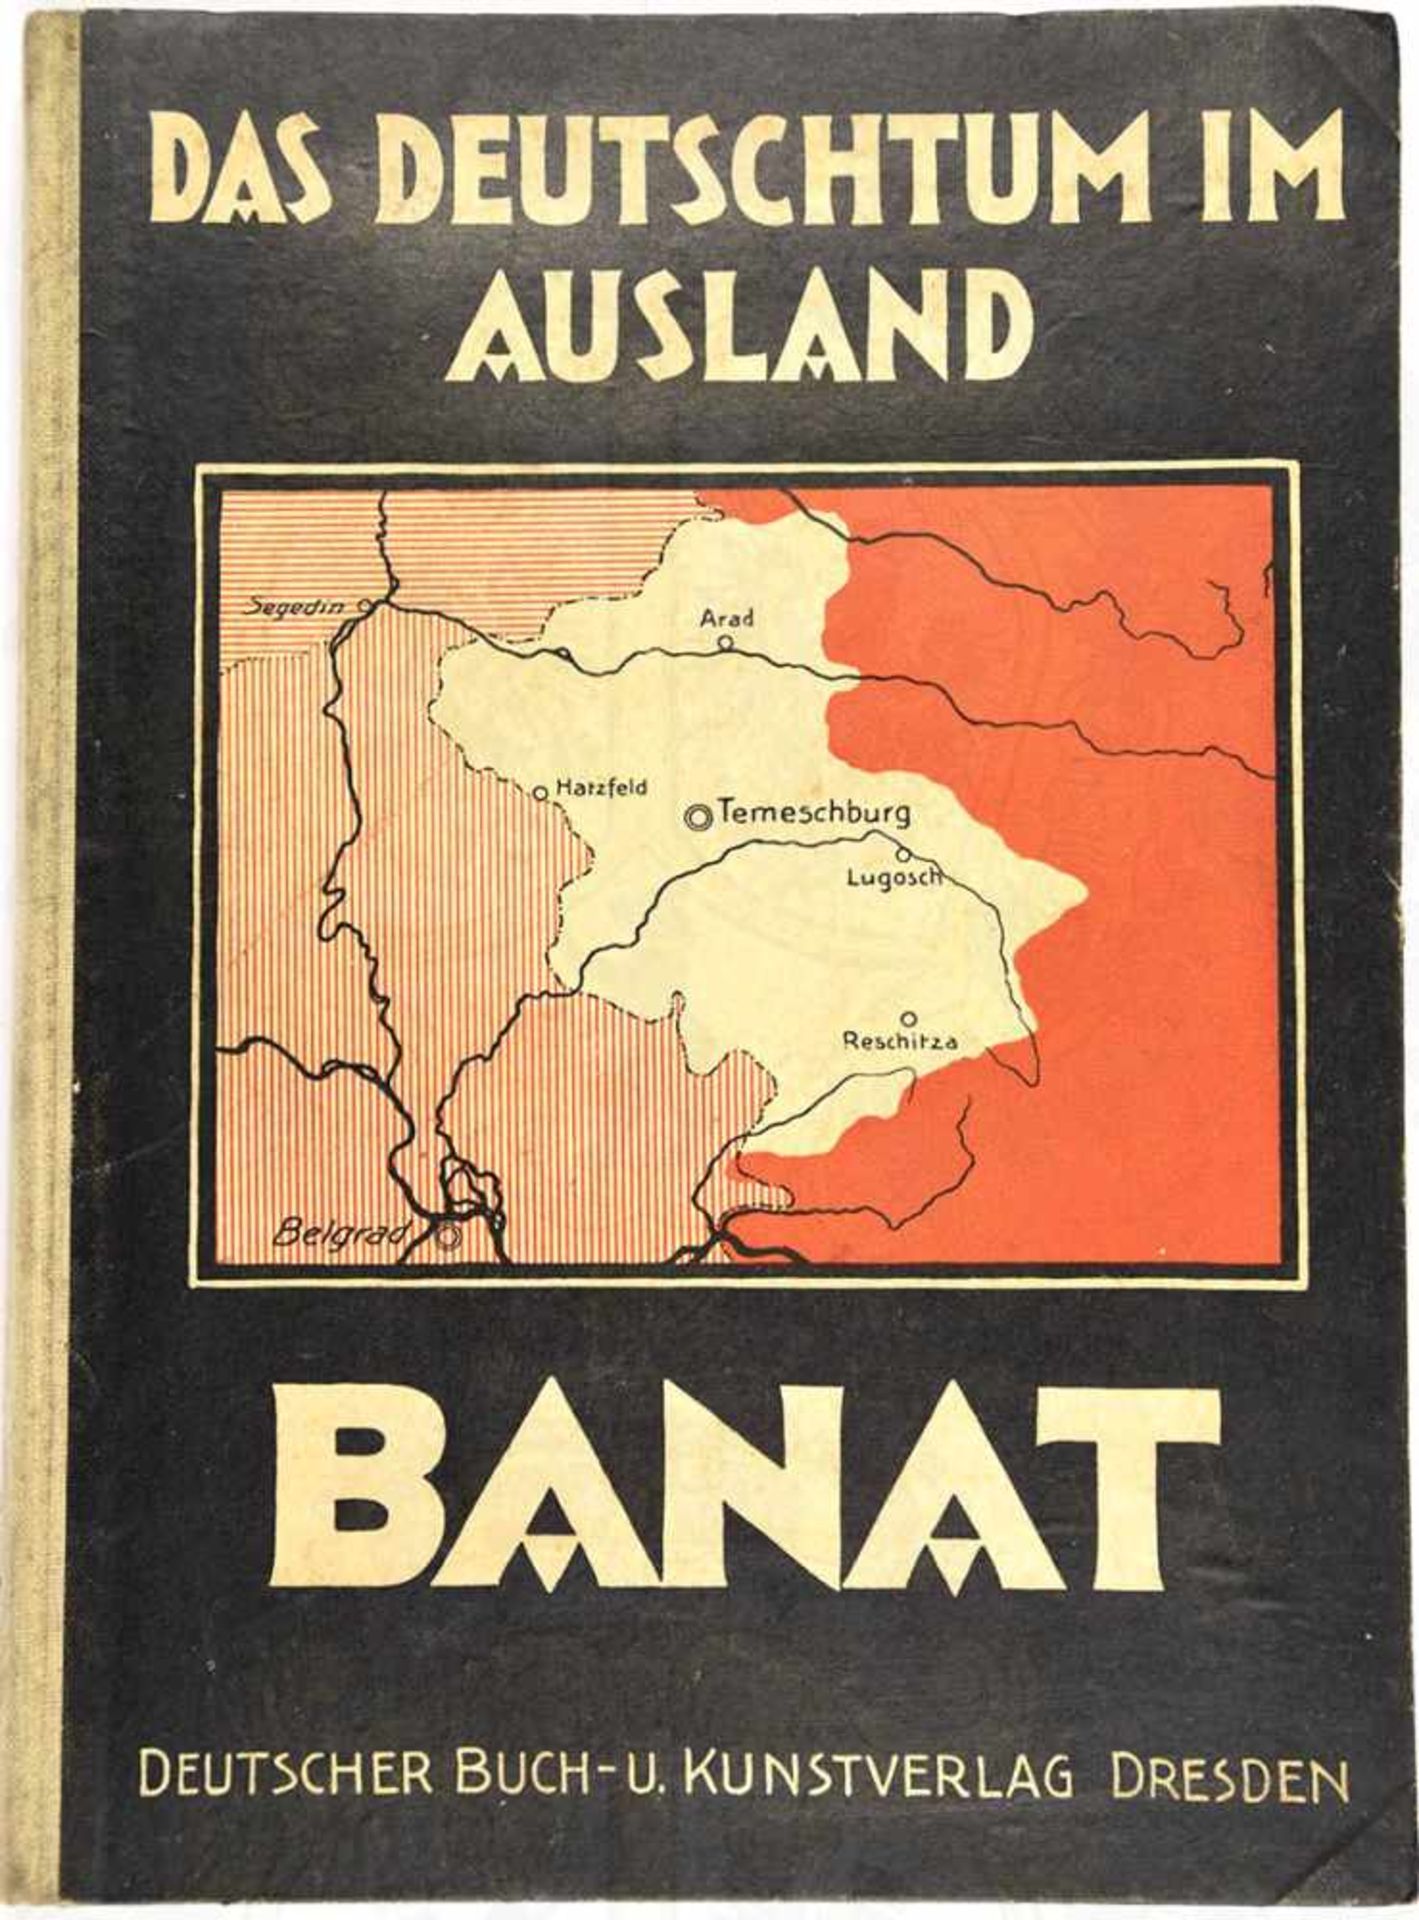 DAS DEUTSCHTUM IM AUSLAND, „...im Rumänischen Banat“, Dr. K. Bell, Dresden 1926, 1 Farbtafel, zahlr.